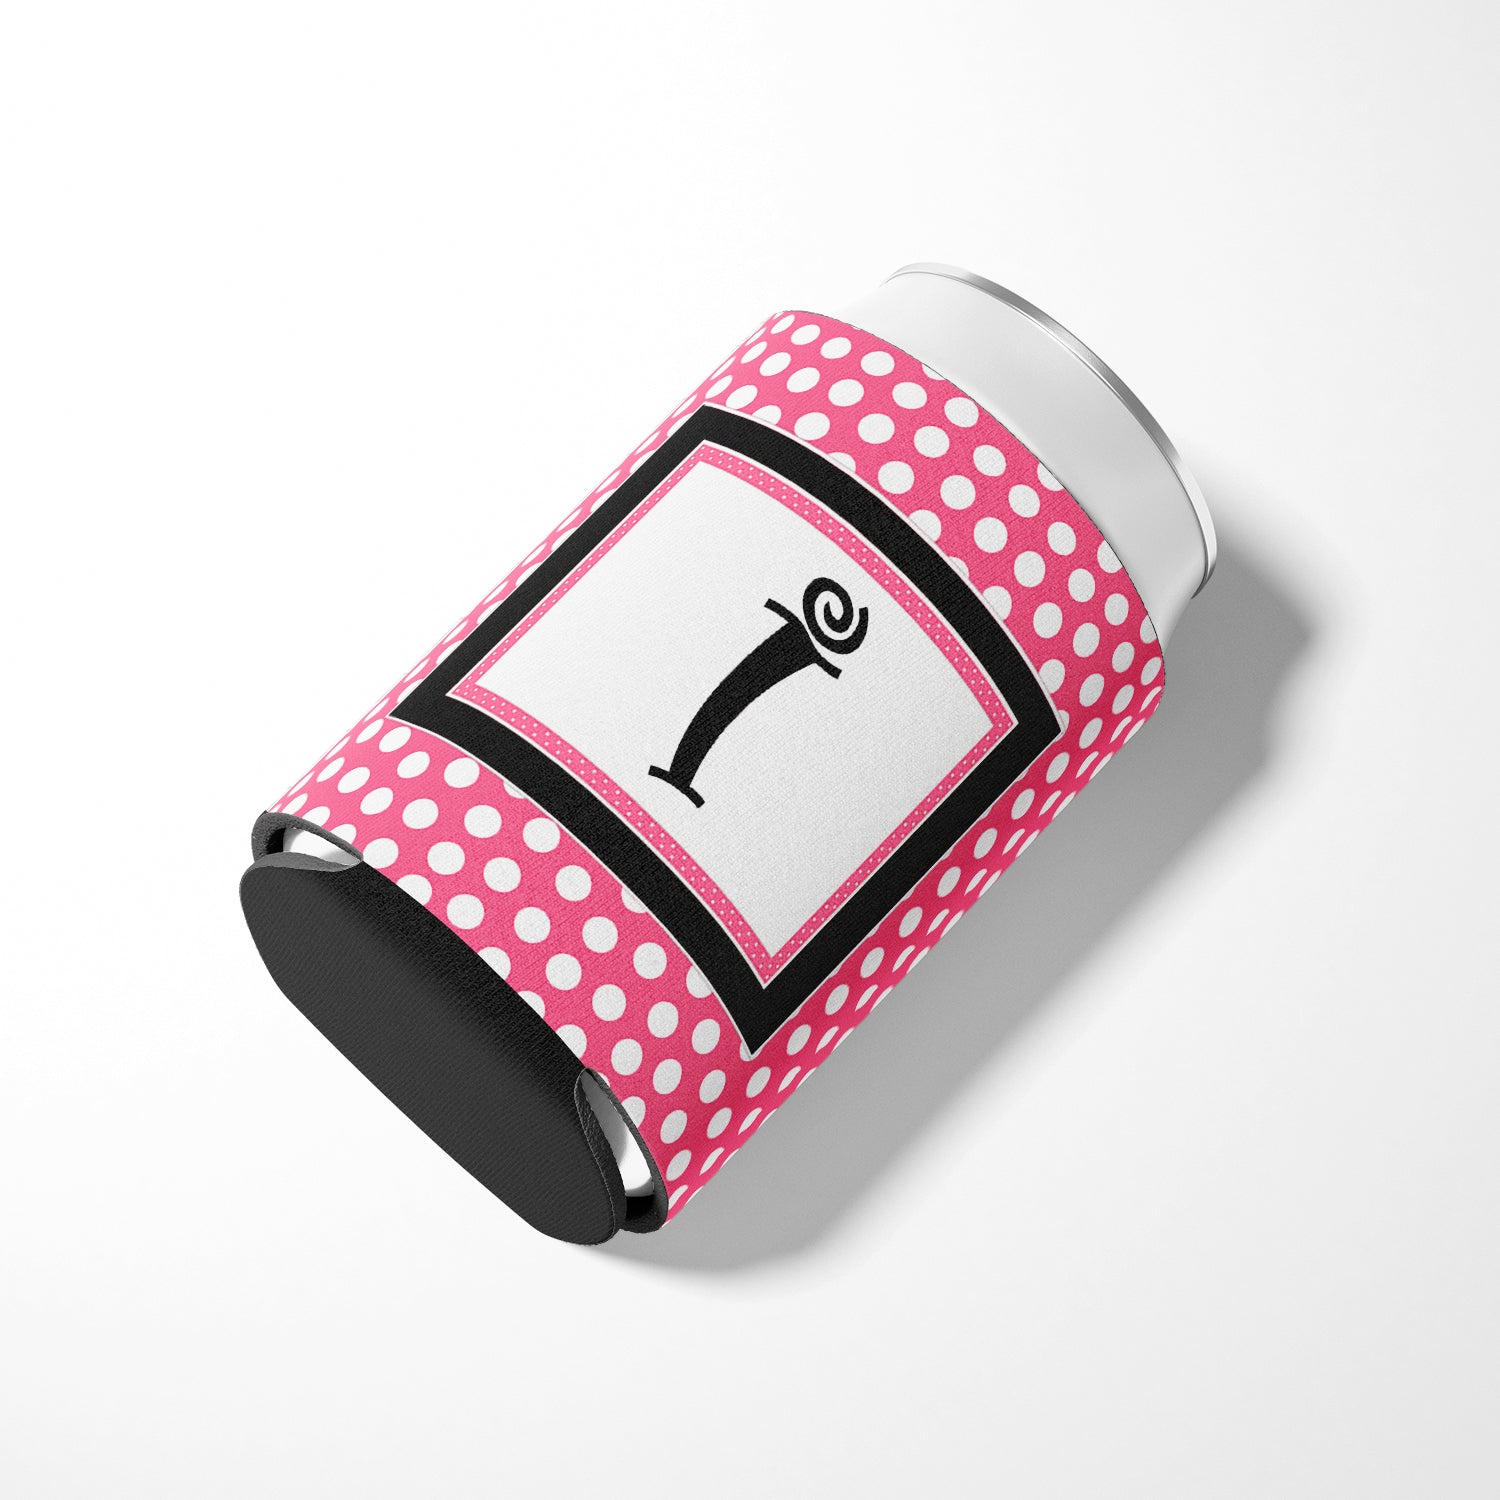 Letter I Initial Monogram - Pink Black Polka Dots Can or Bottle Beverage Insulator Hugger.